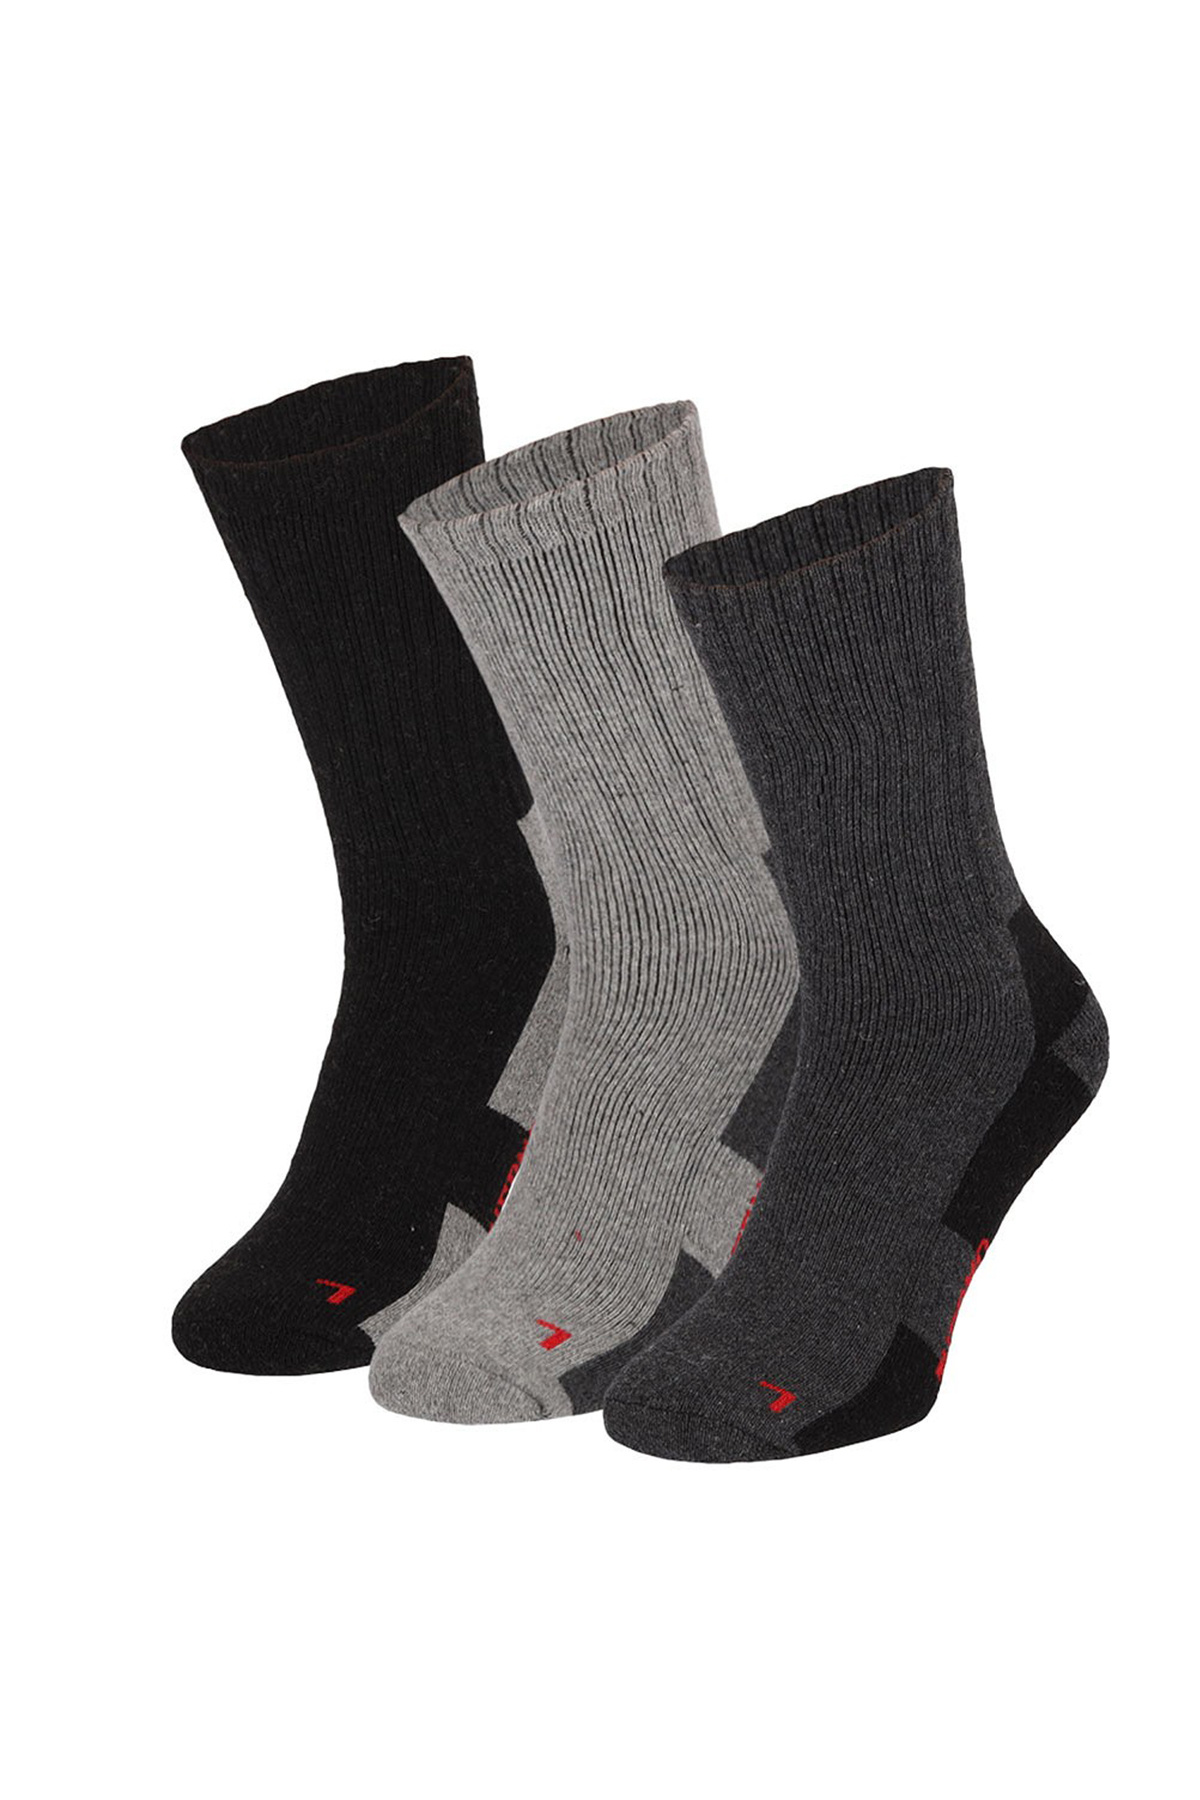 Afbeelding van Apollo Dames / heren thermo sokken unisex 3-pack